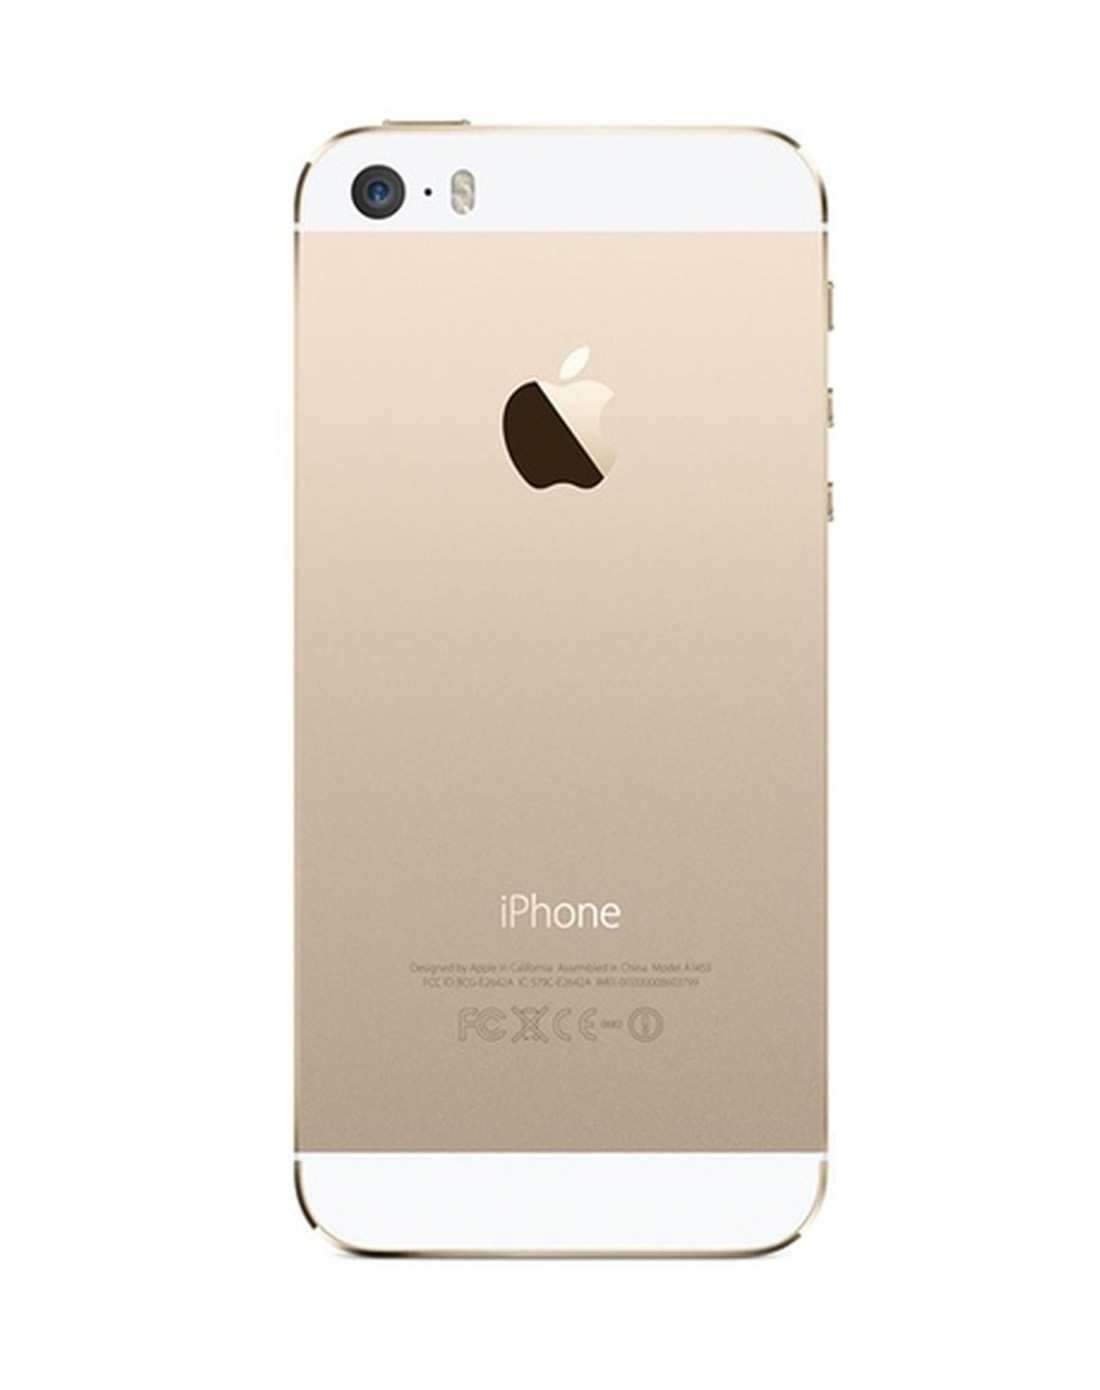 苹果iphone5s手机 16g 0元购机 送专属靓号 微信6g流量 金色